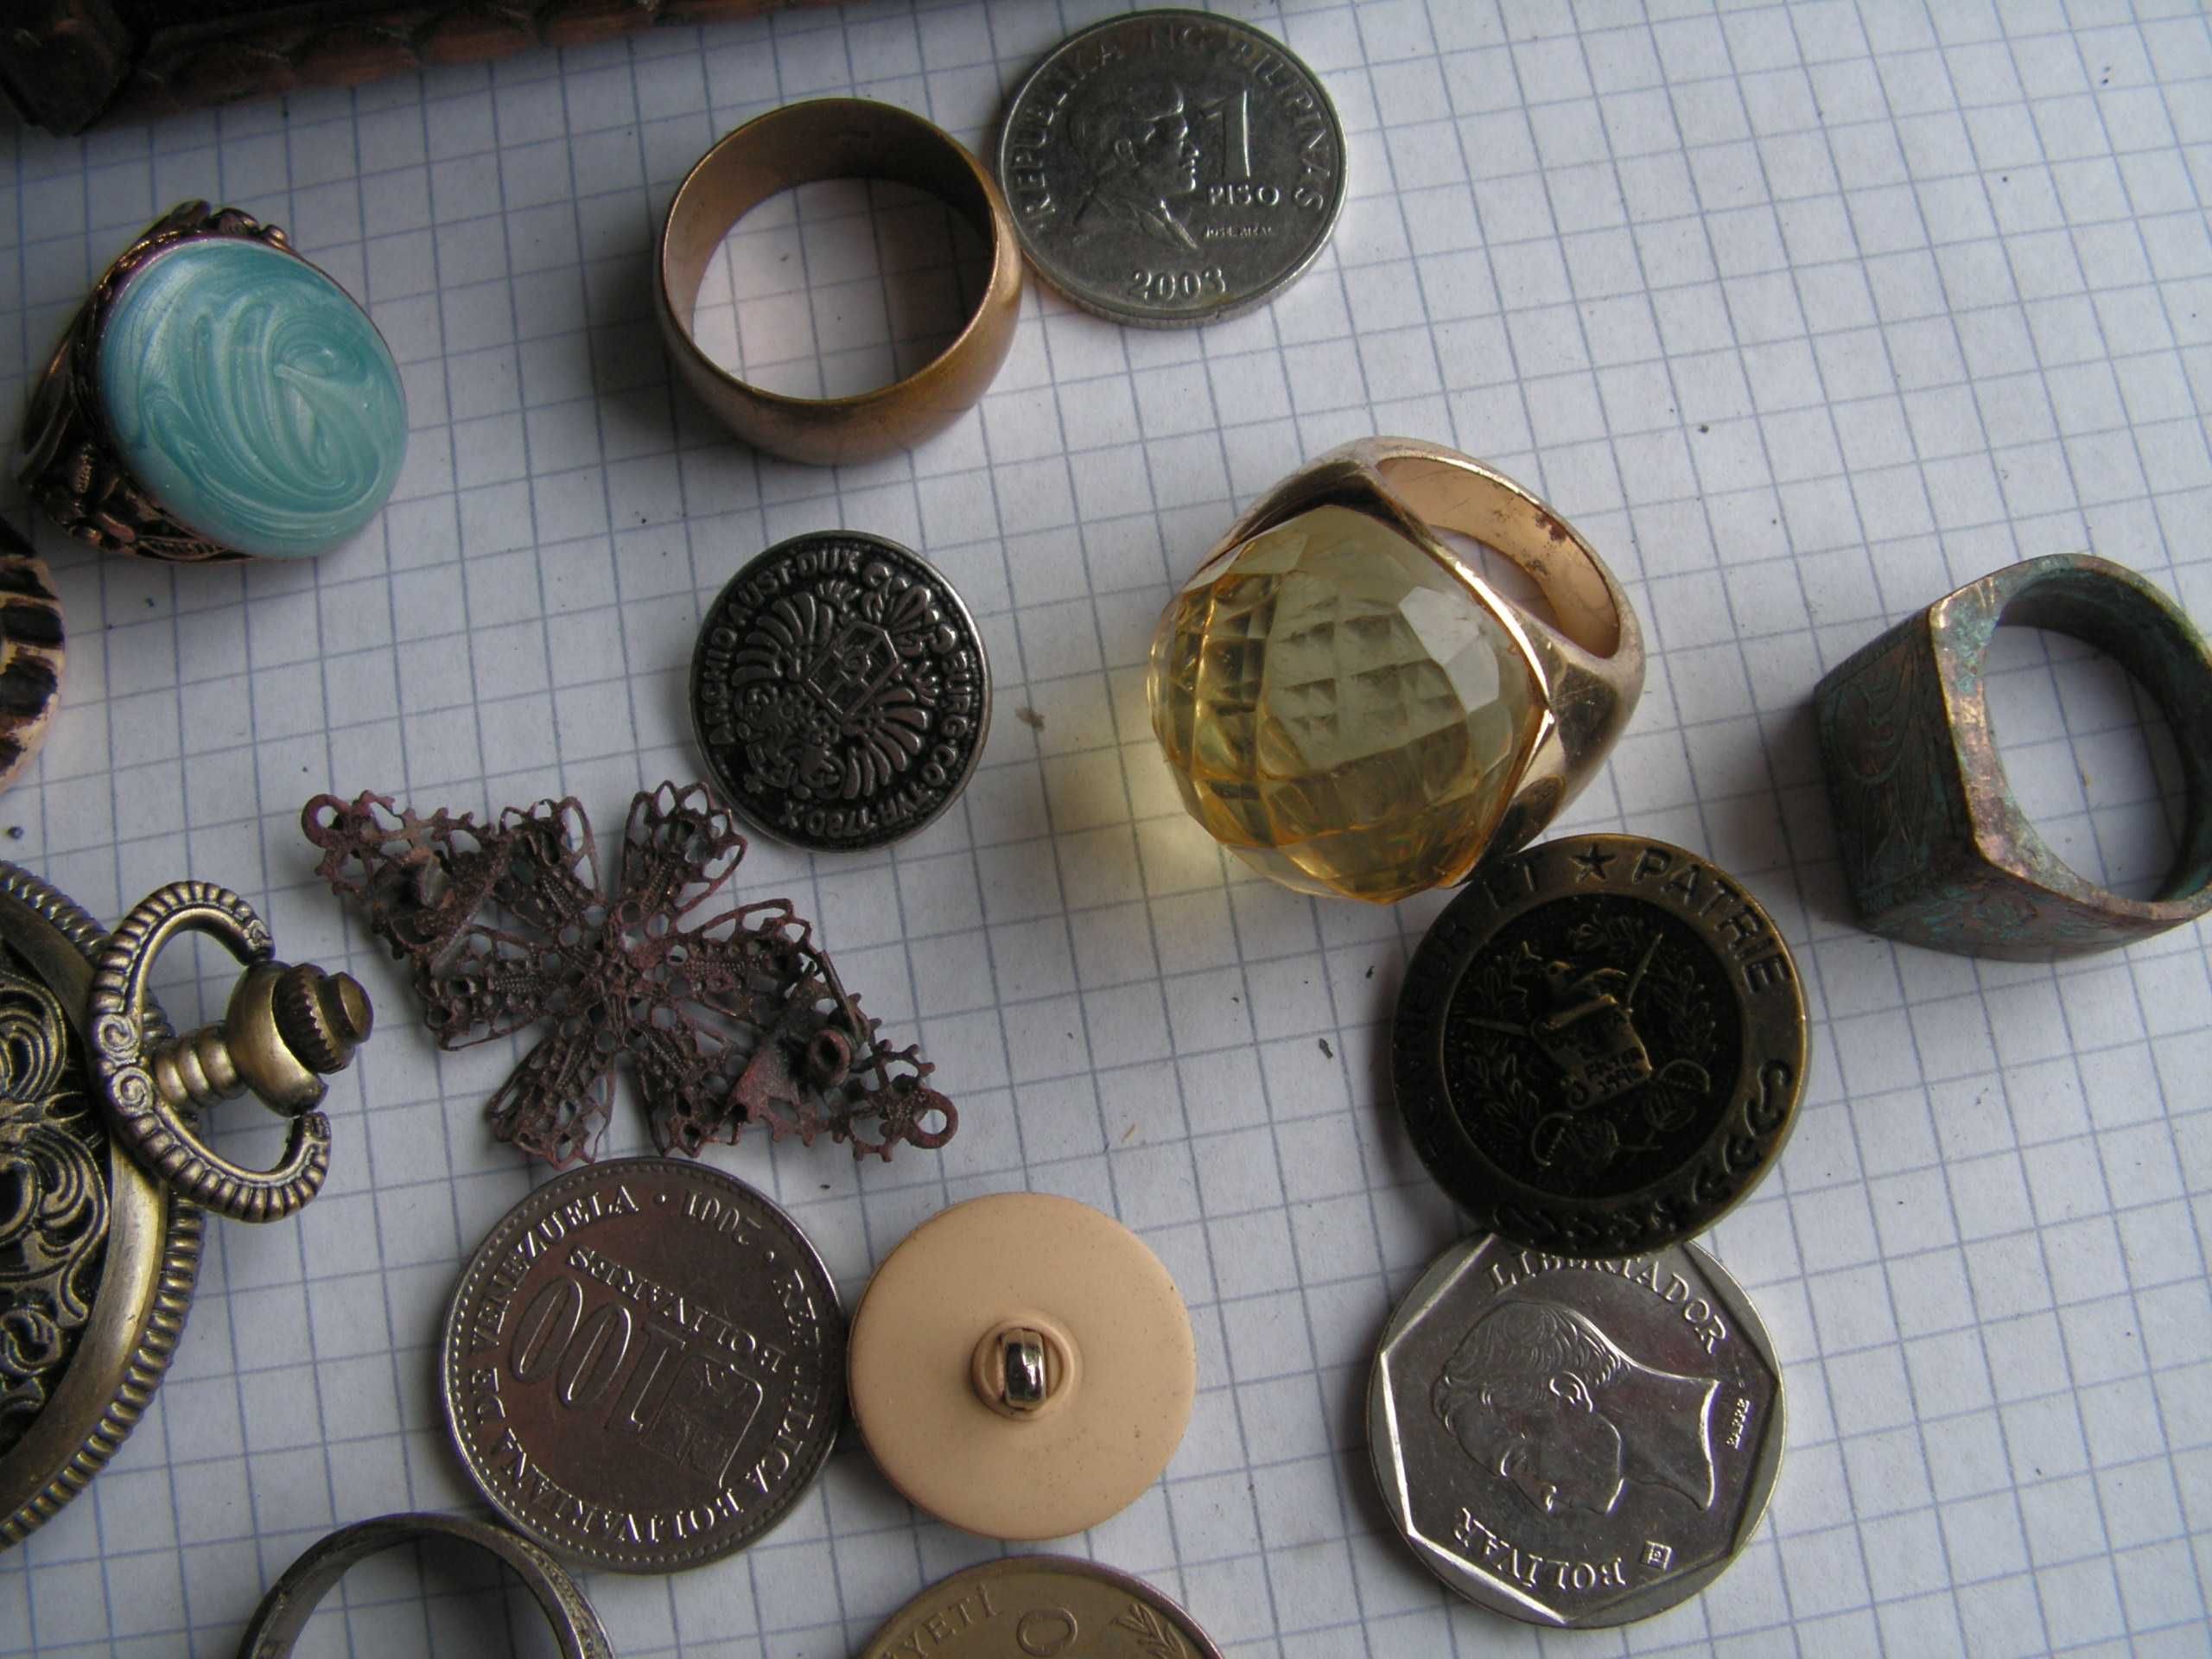 Pudełko z bizuterią, monetami, zegarkami